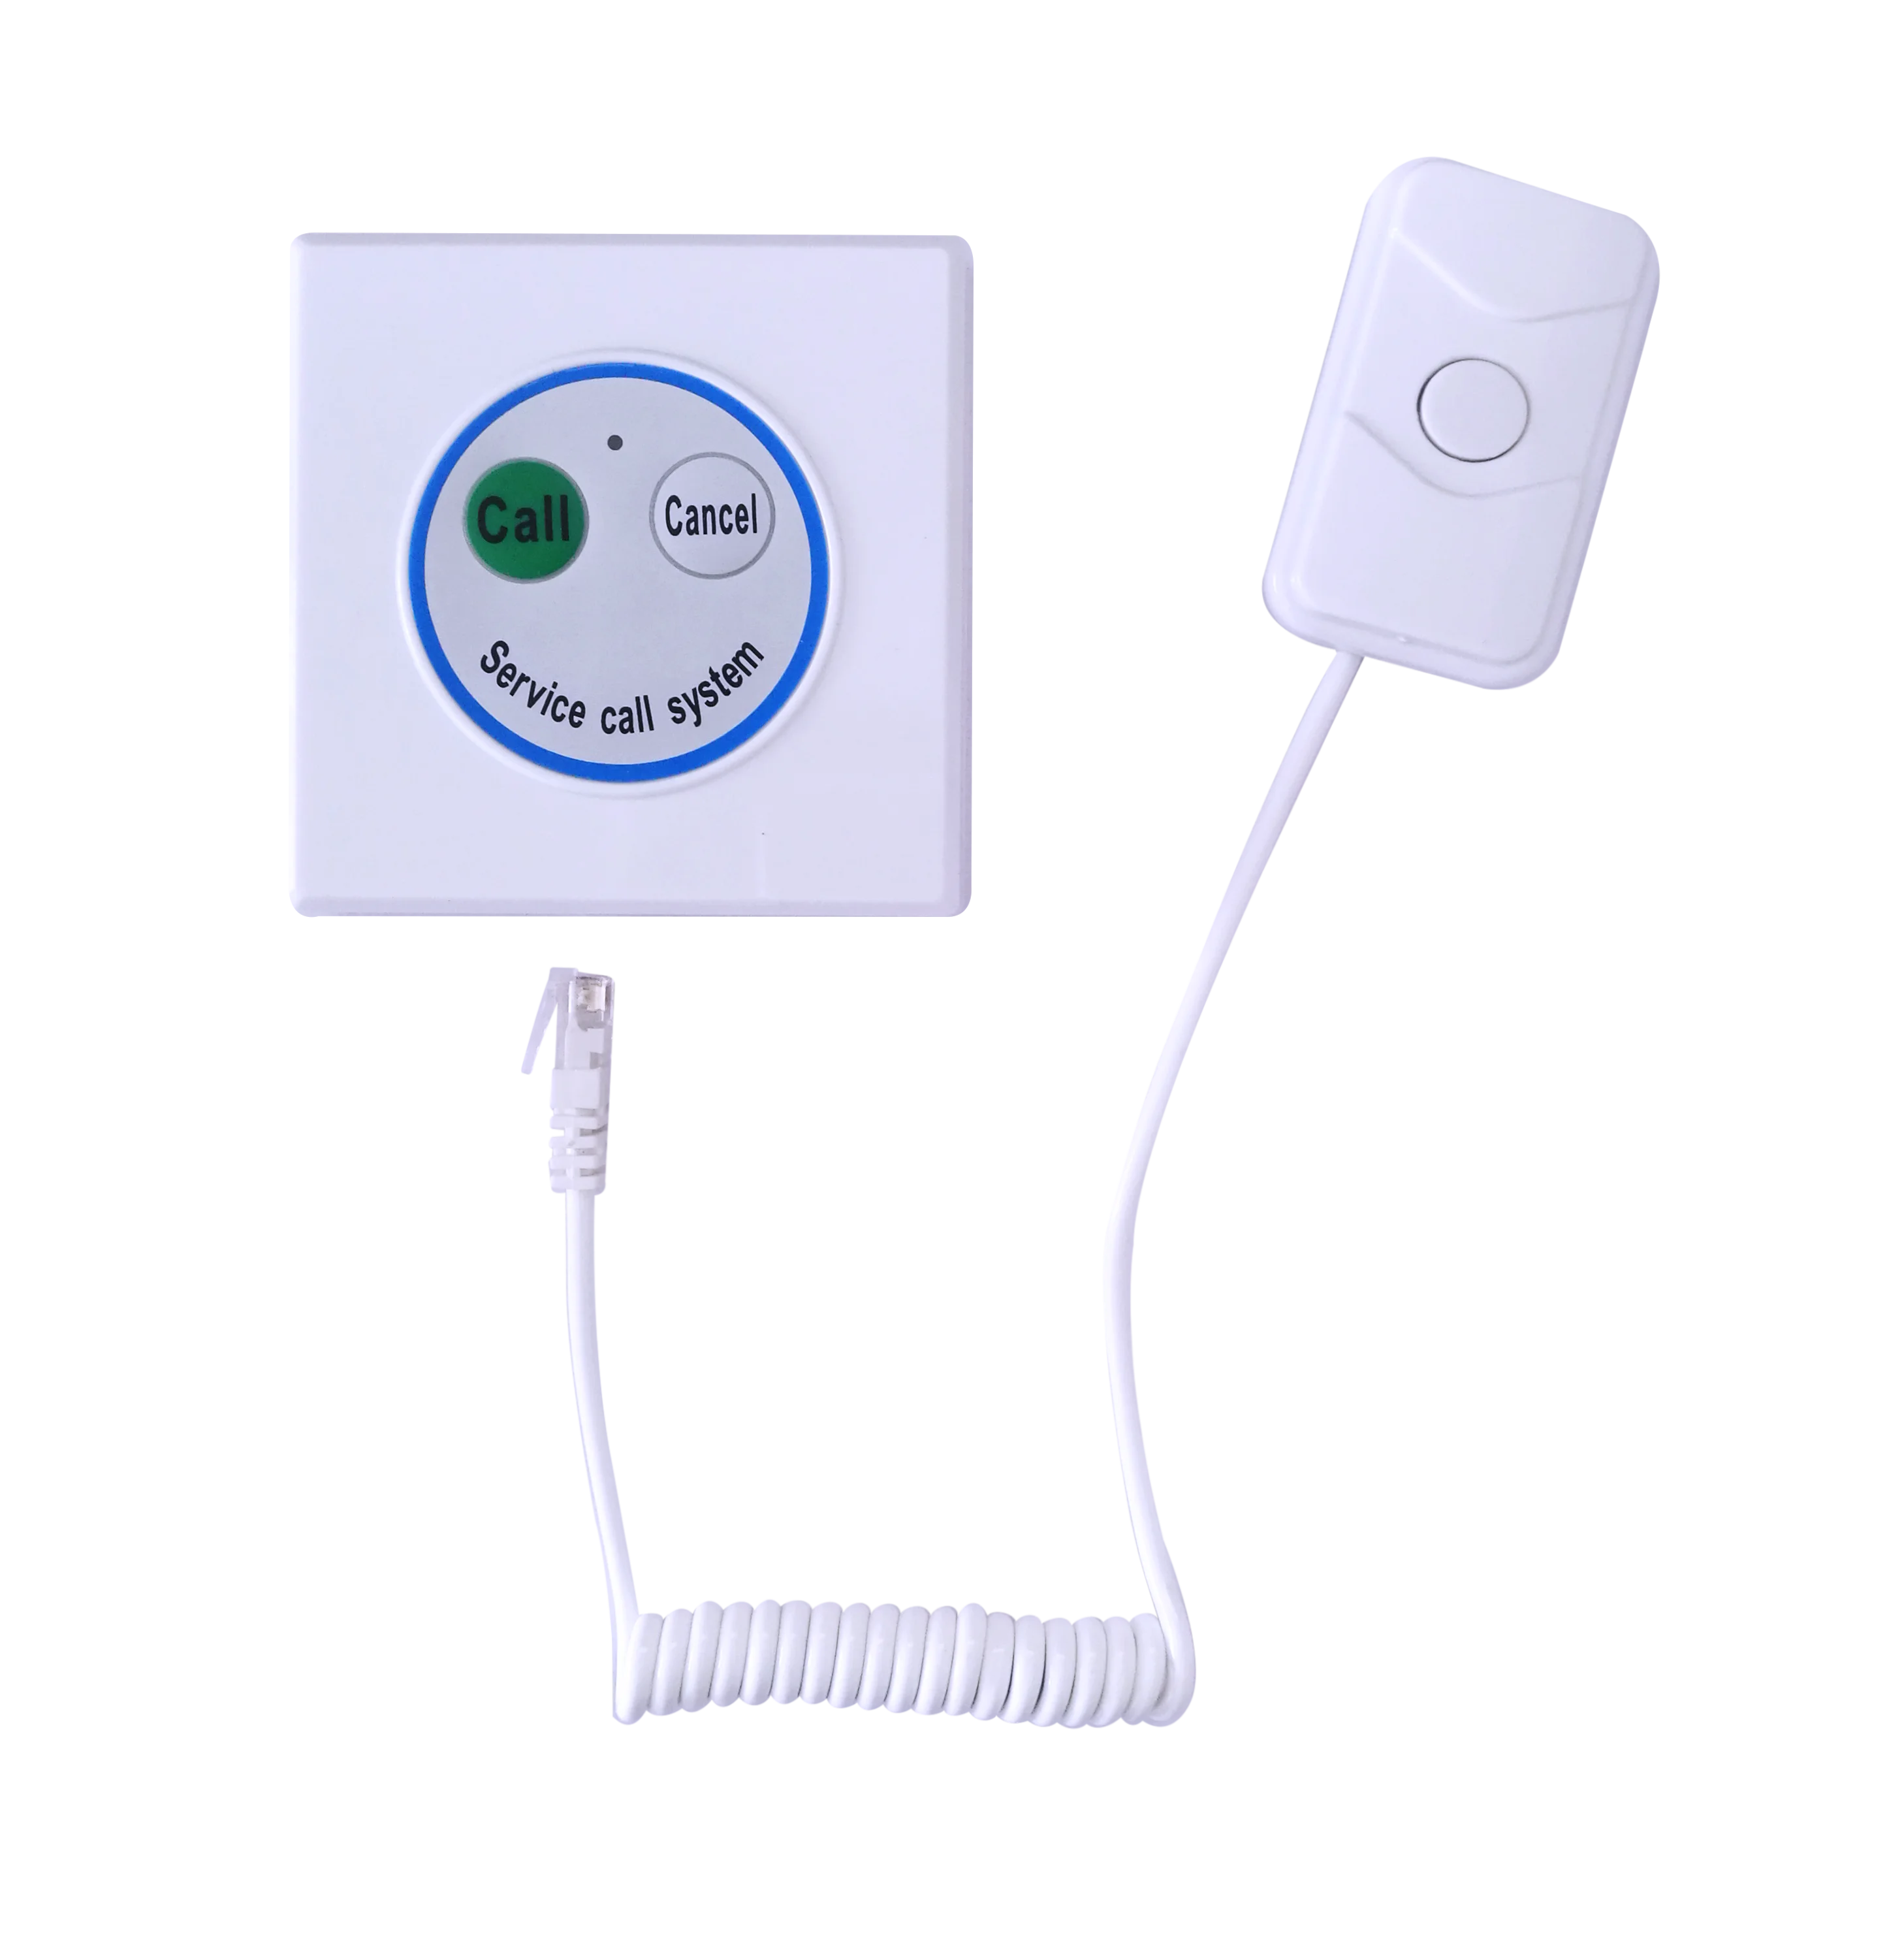 Koqi ナース コール システム緊急患者パニック コール ボタン用高齢医療機器 Buy ナース コール システム プッシュ ボタン 赤パニック ボタン リモート パニック ボタン Product On Alibaba Com